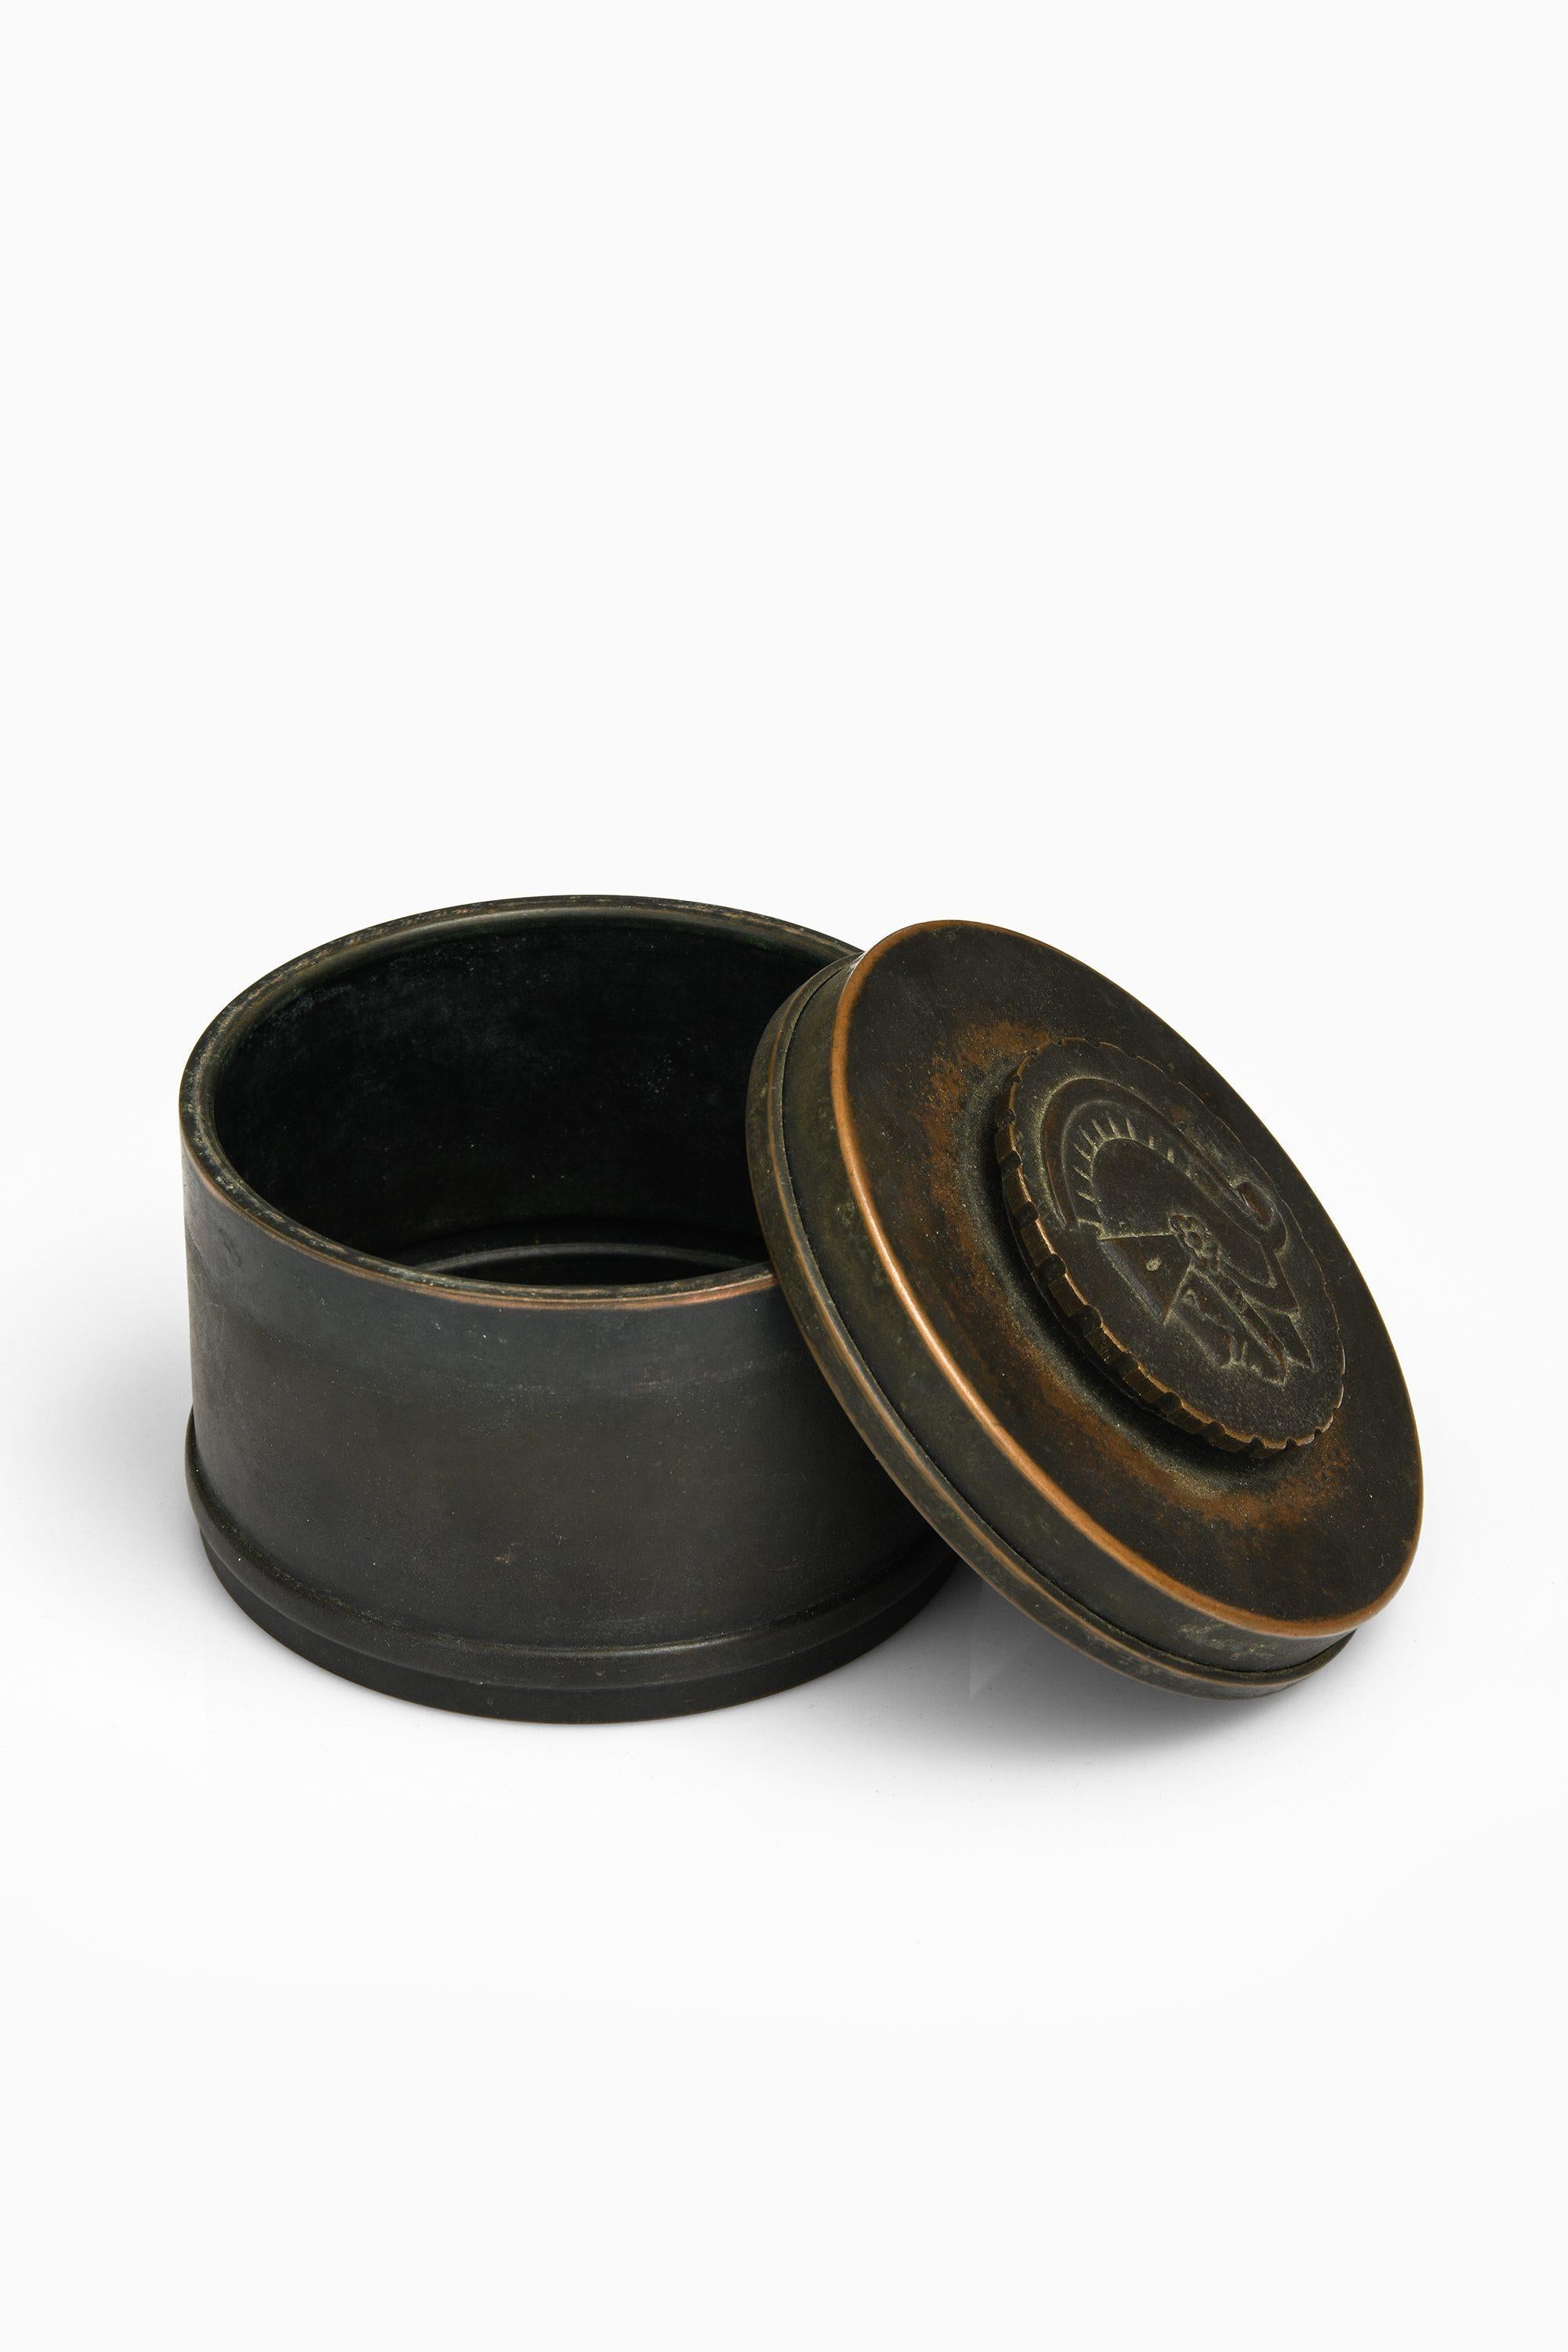 Bronze JAR von Nils Johan, 1920-1930

Zusätzliche Informationen:
MATERIAL: Bronze 
Produziert in Schweden
Abmessungen: (B x T x H): 13 x 13 x 9 cm
Zustand: Guter Vintage-Zustand, mit kleinen Gebrauchsspuren